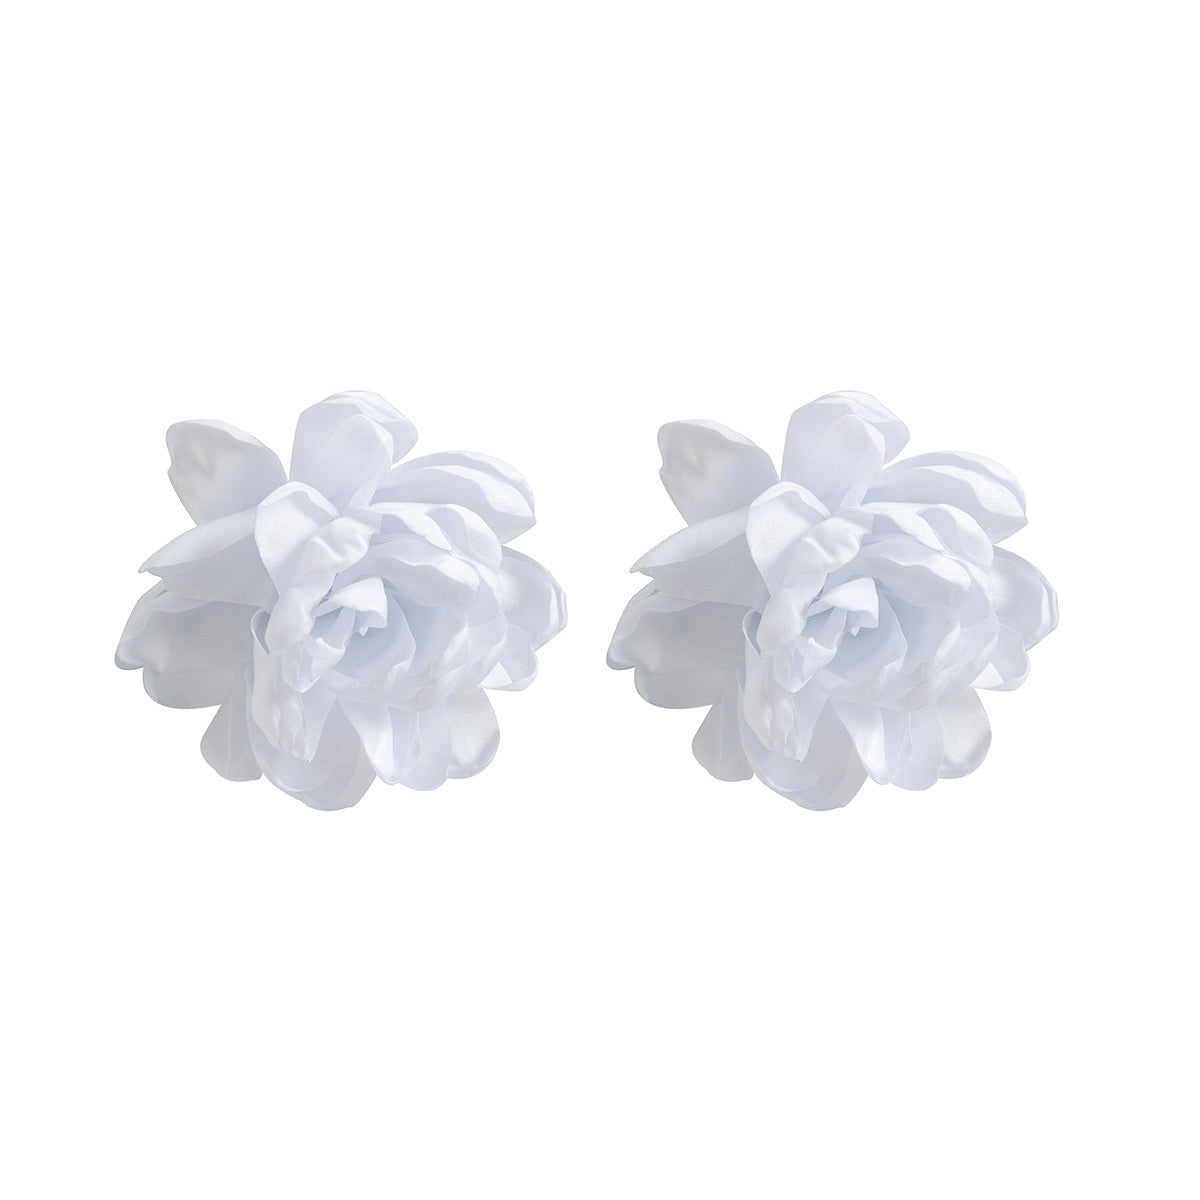 TEEK - Big Fab Flower Earrings JEWELRY theteekdotcom   